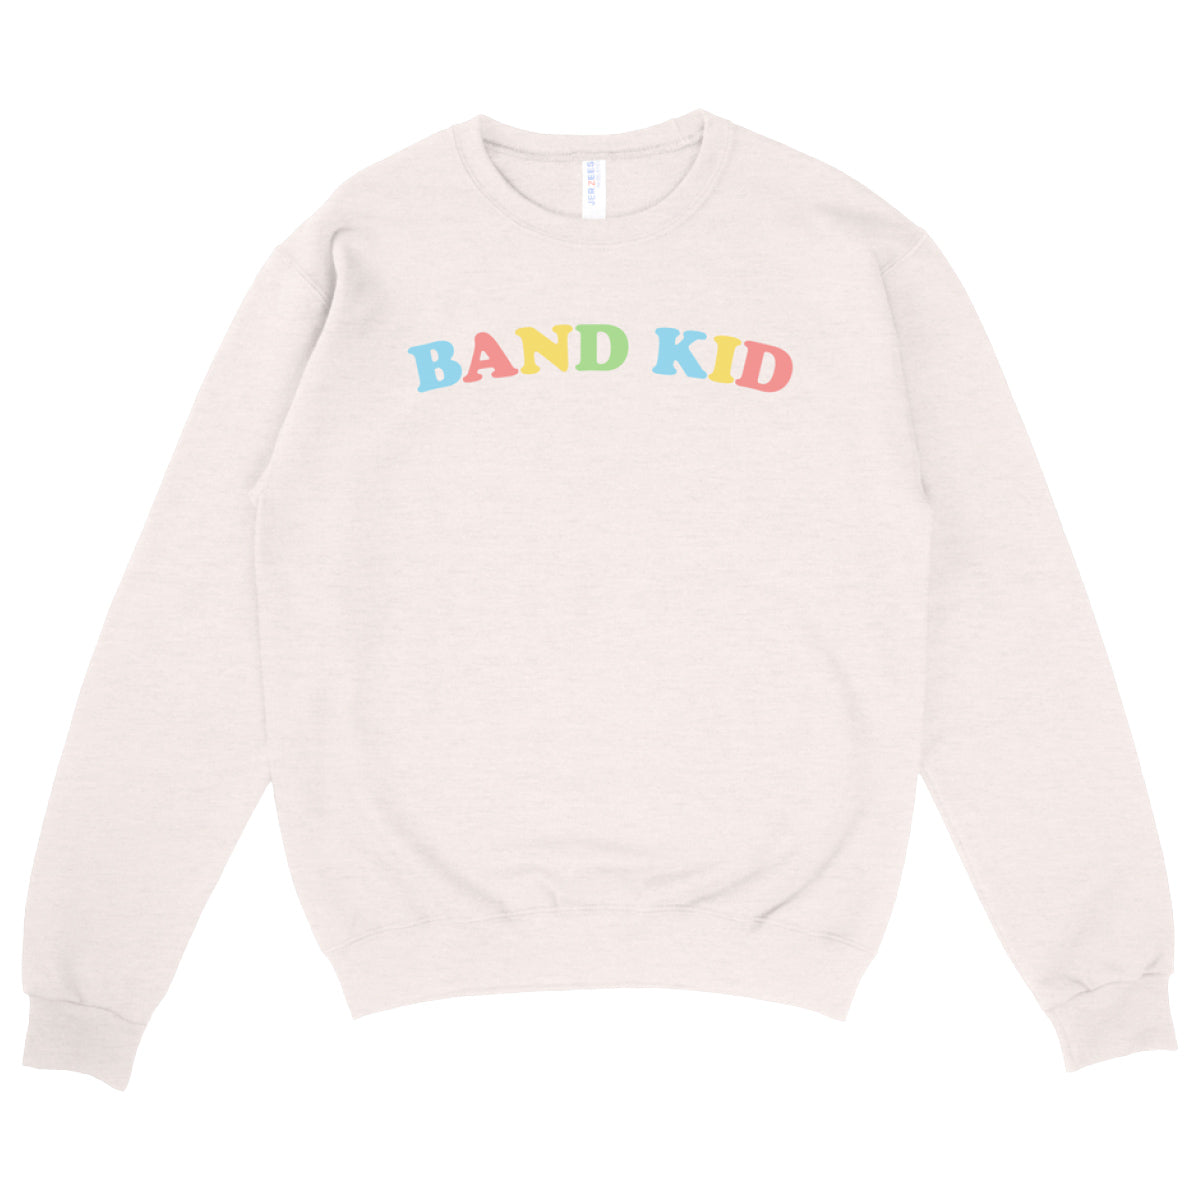 Band Kid Sweater - Cream Puff